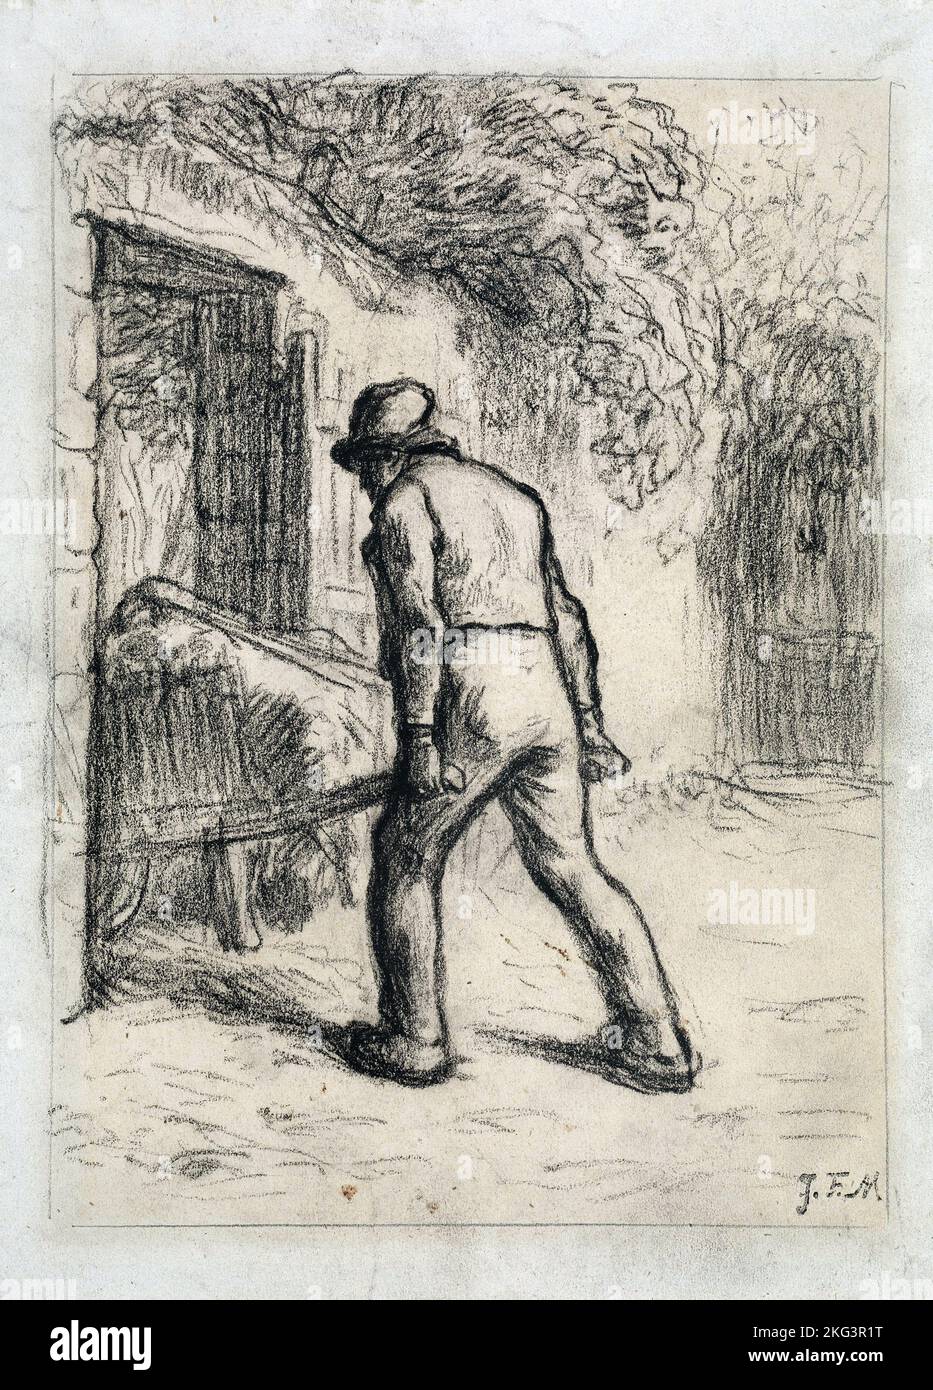 Jean-Francois Millet; Studie für den Mann mit einer Schubkarre; um 1855-1856; schwarzer conte-Buntstift auf beigefarbenem Wove-Papier; Museum of Fine Arts Boston, USA. Stockfoto